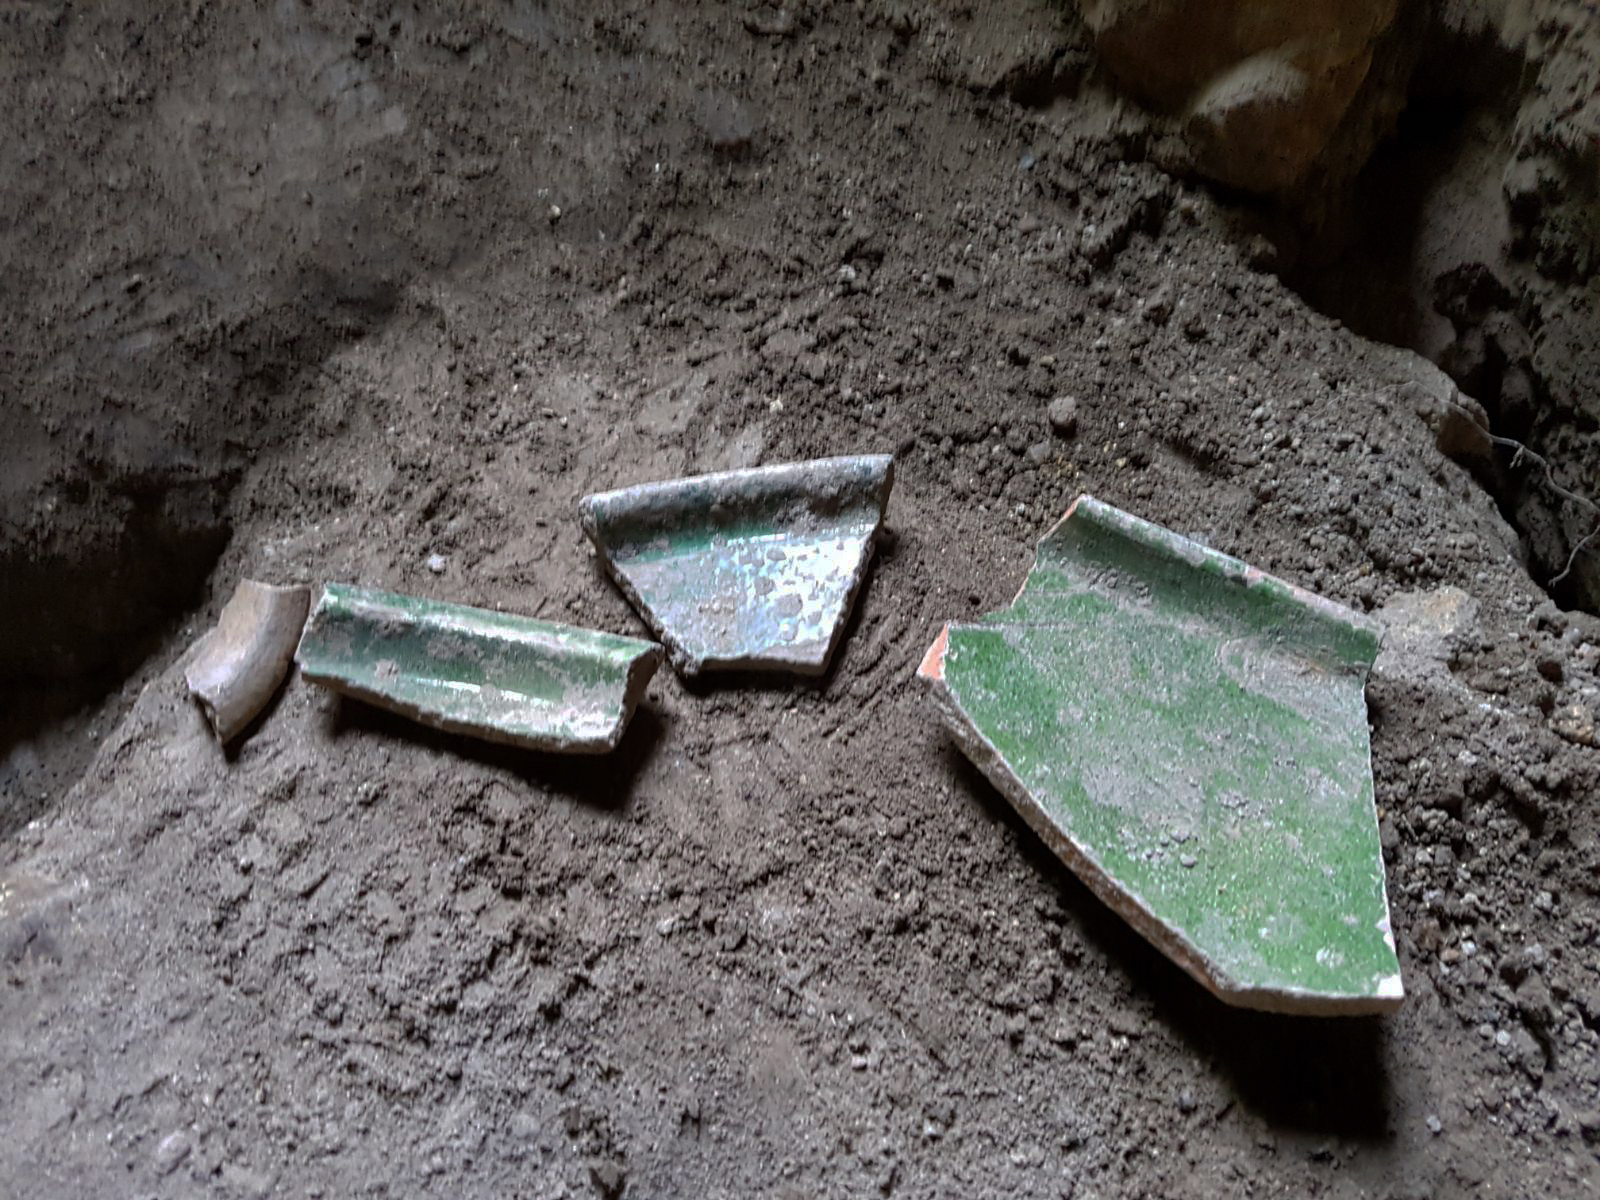 שברי כלי אגירה שניזוקו בחפירה הלא חוקית בכפר עילבון - צילום: רשות העתיקות